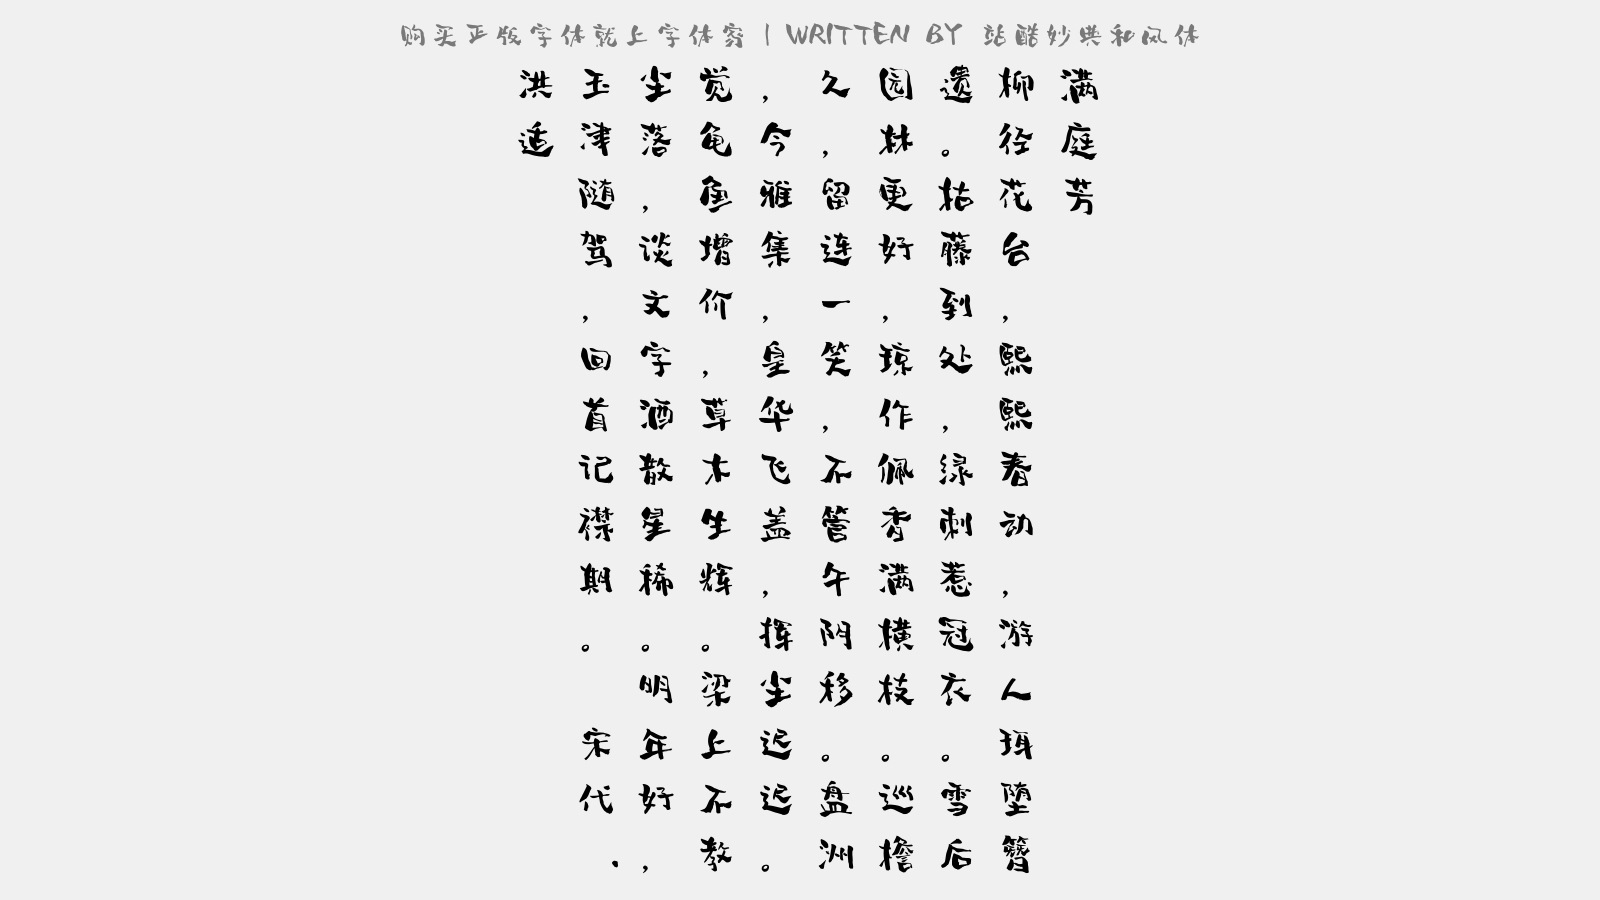 站酷妙典和风体免费字体下载 中文字体免费下载尽在字体家